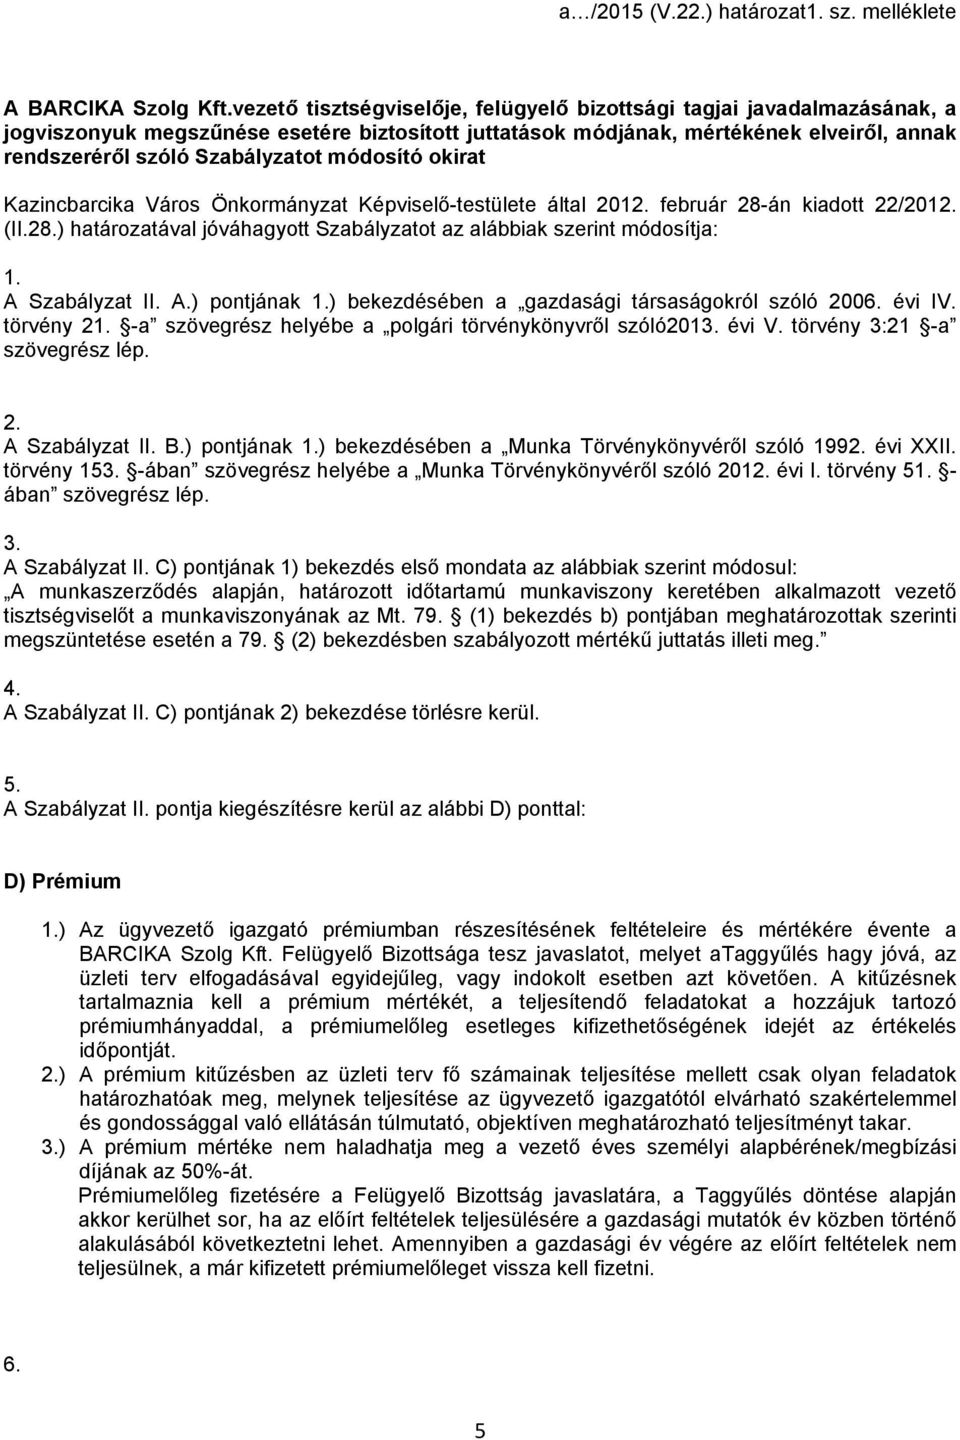 módosító okirat Kazincbarcika Város Önkormányzat Képviselő-testülete által 2012. február 28-án kiadott 22/2012. (II.28.) határozatával jóváhagyott Szabályzatot az alábbiak szerint módosítja: 1.